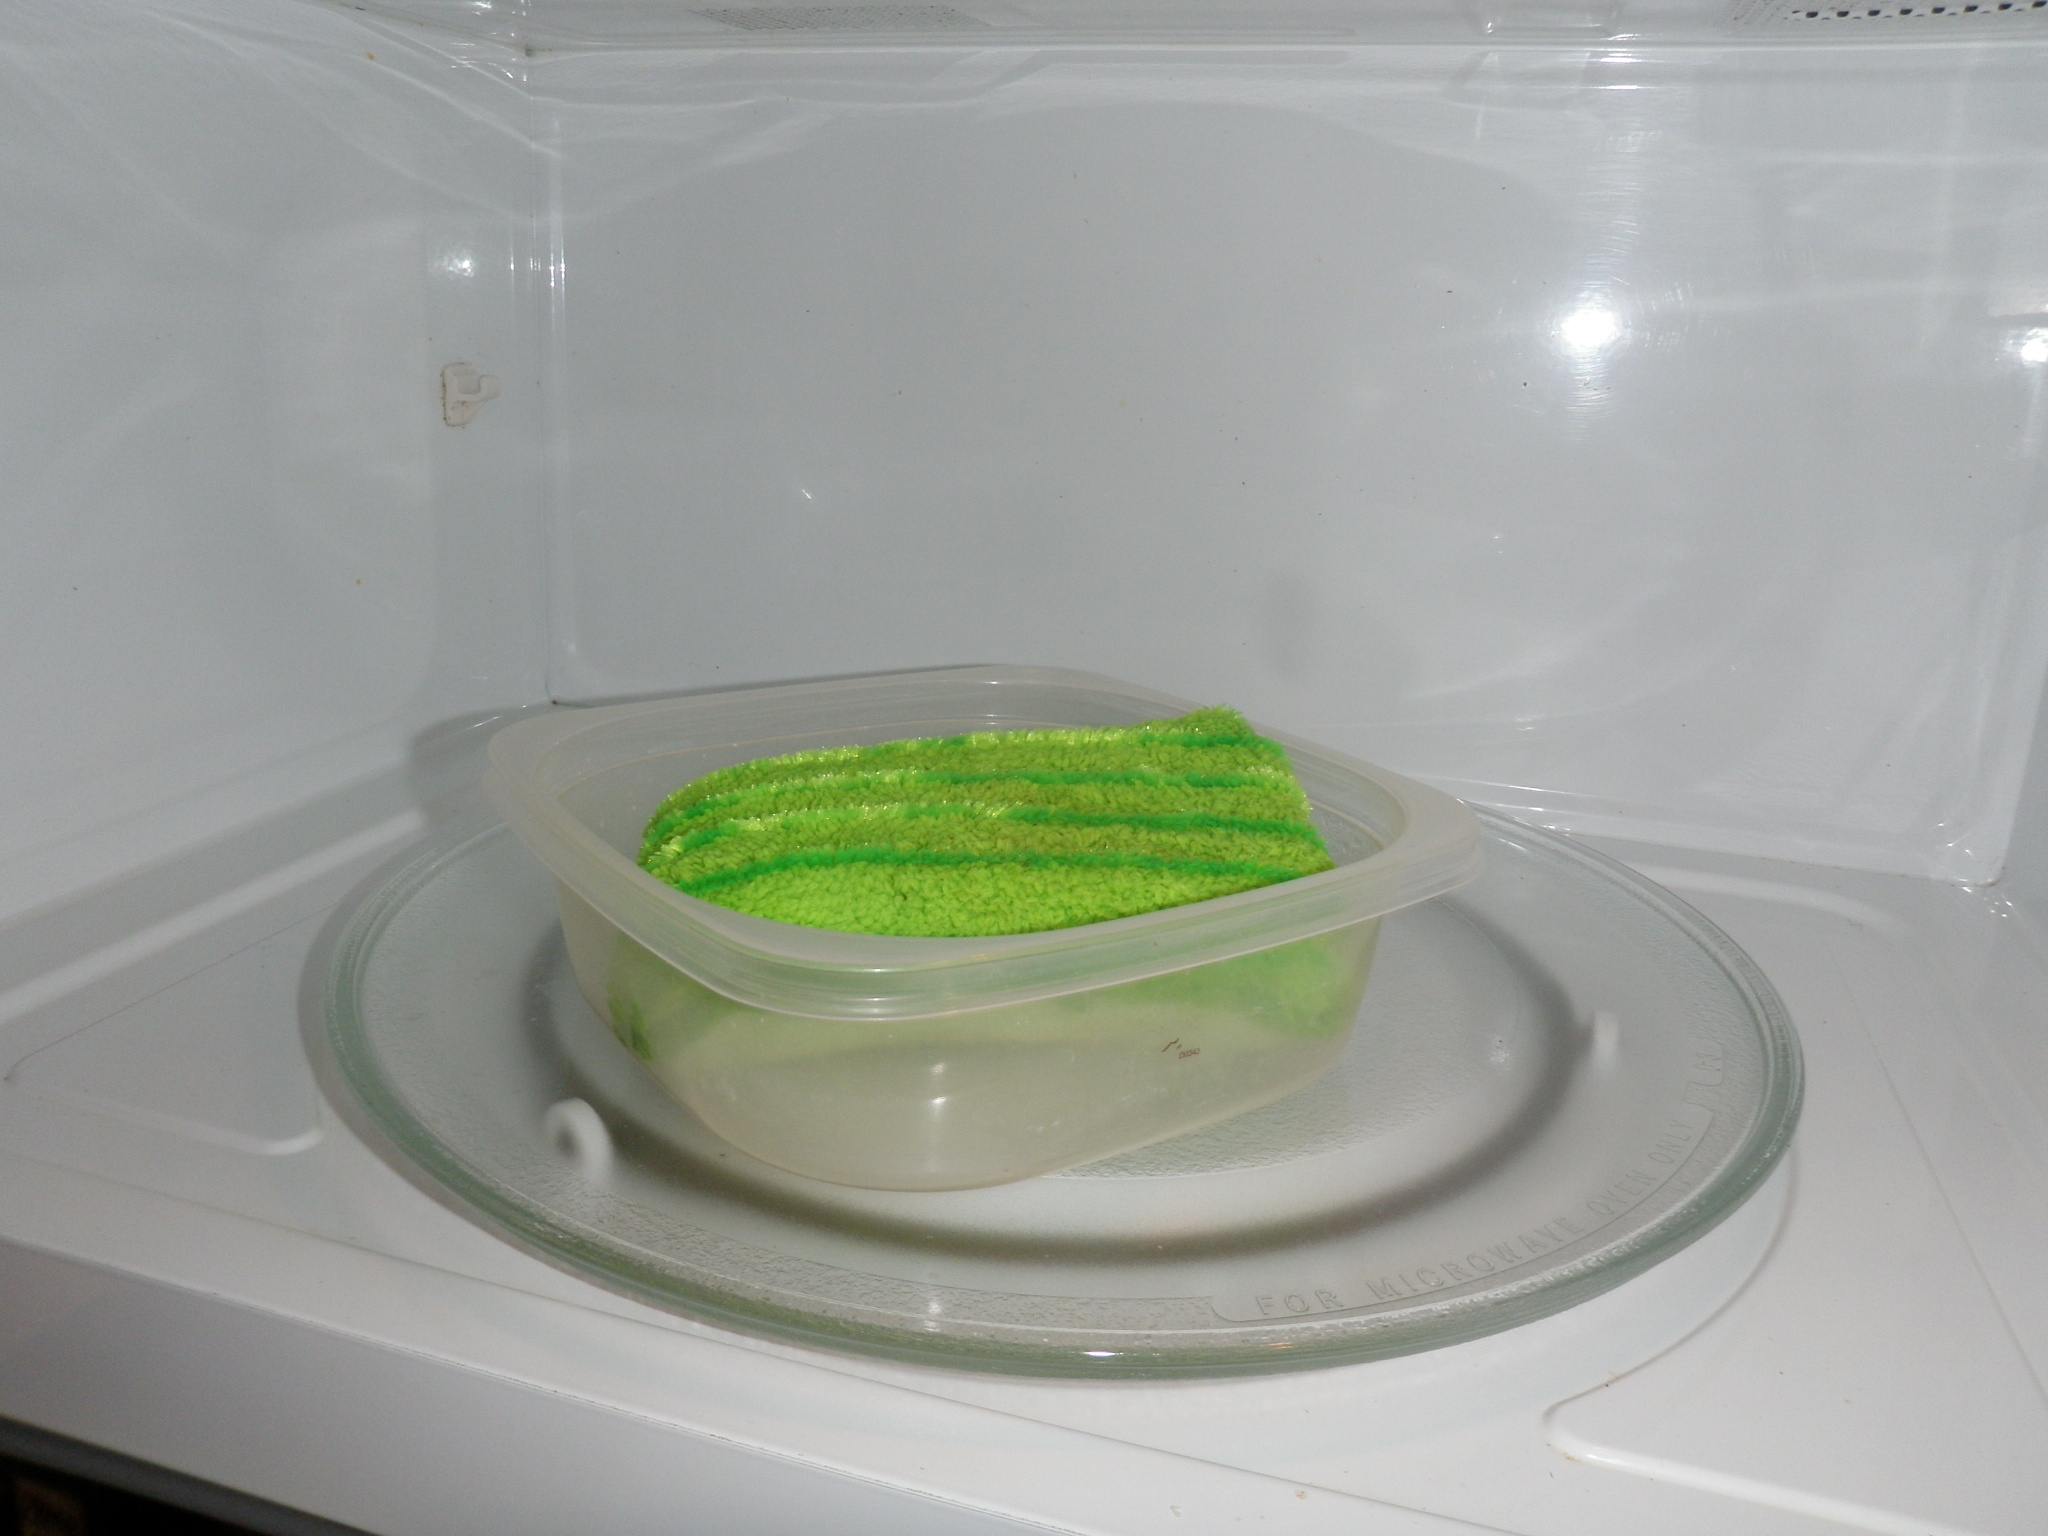 sterilize sponge in microwave